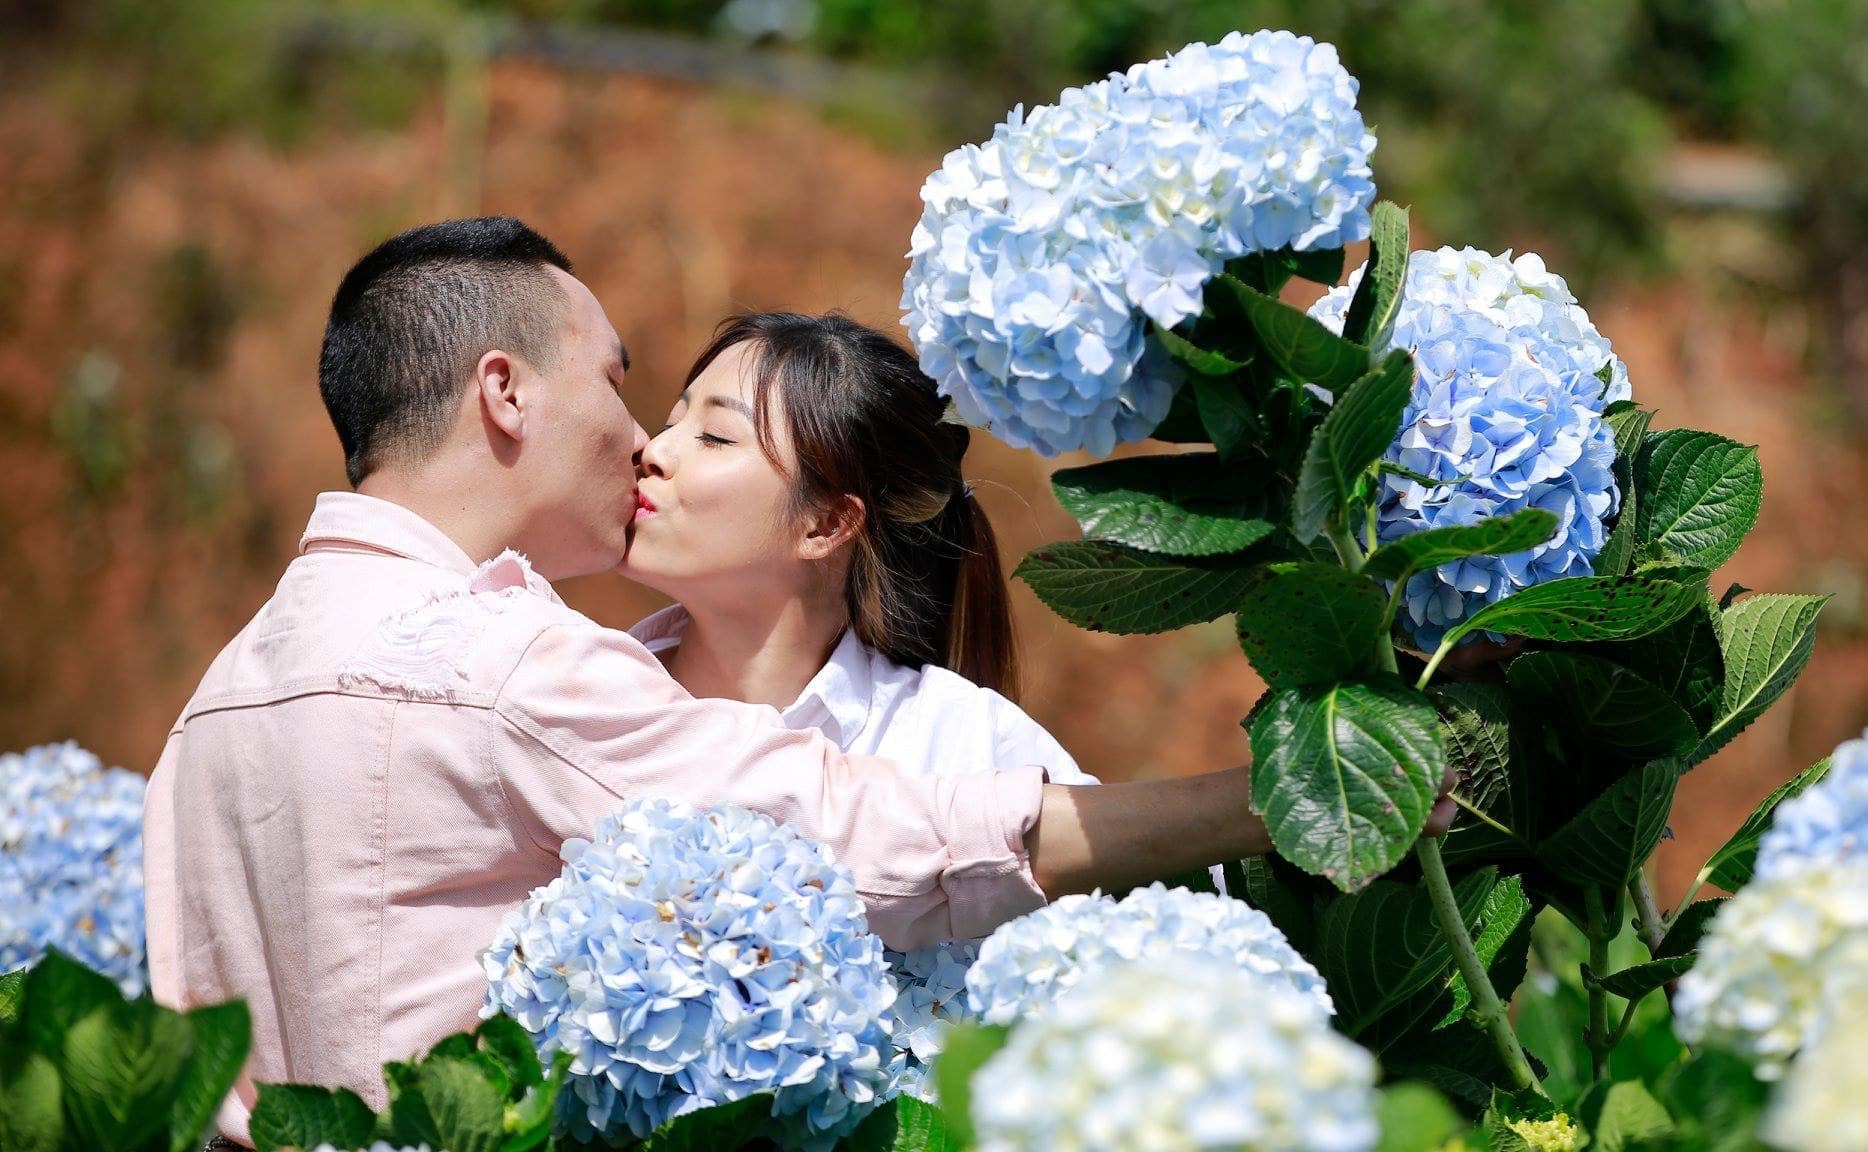 Hãy cùng đón xem hình ảnh vợ chồng MC Hoàng Linh tình tứ khoe hạnh phúc trên Instagram nhé! Sự đáng yêu của cặp đôi này sẽ khiến bạn không thể rời mắt khỏi bức ảnh.